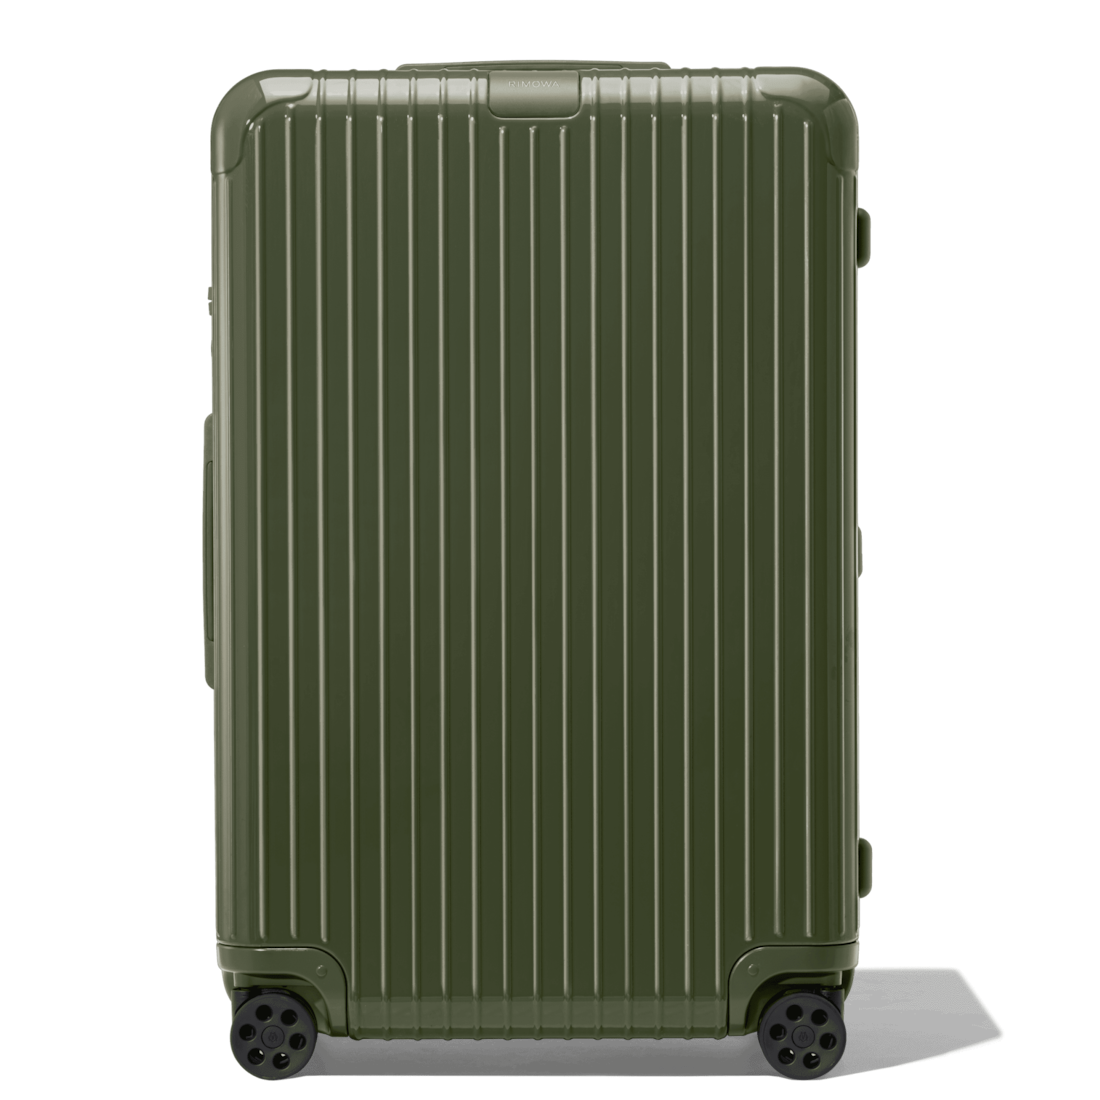 rimowa luggage green